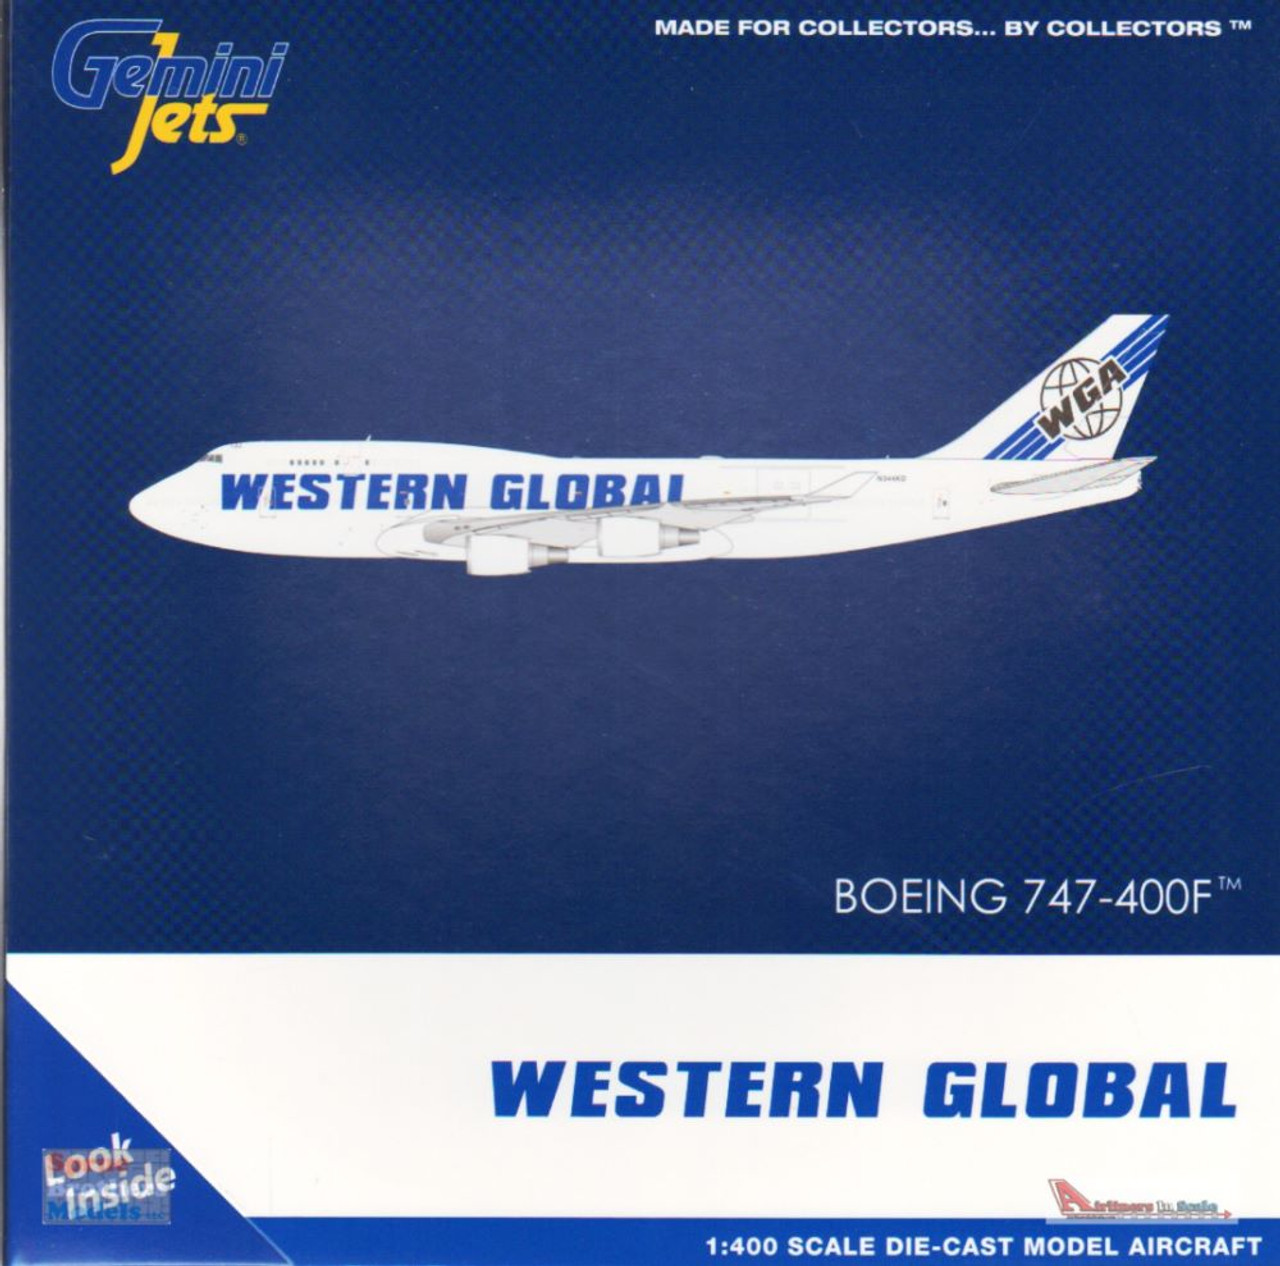 GEMGJ2015 1:400 Gemini Jets Western Global 747-400BCF Reg #N344KD  (pre-painted/pre-built)